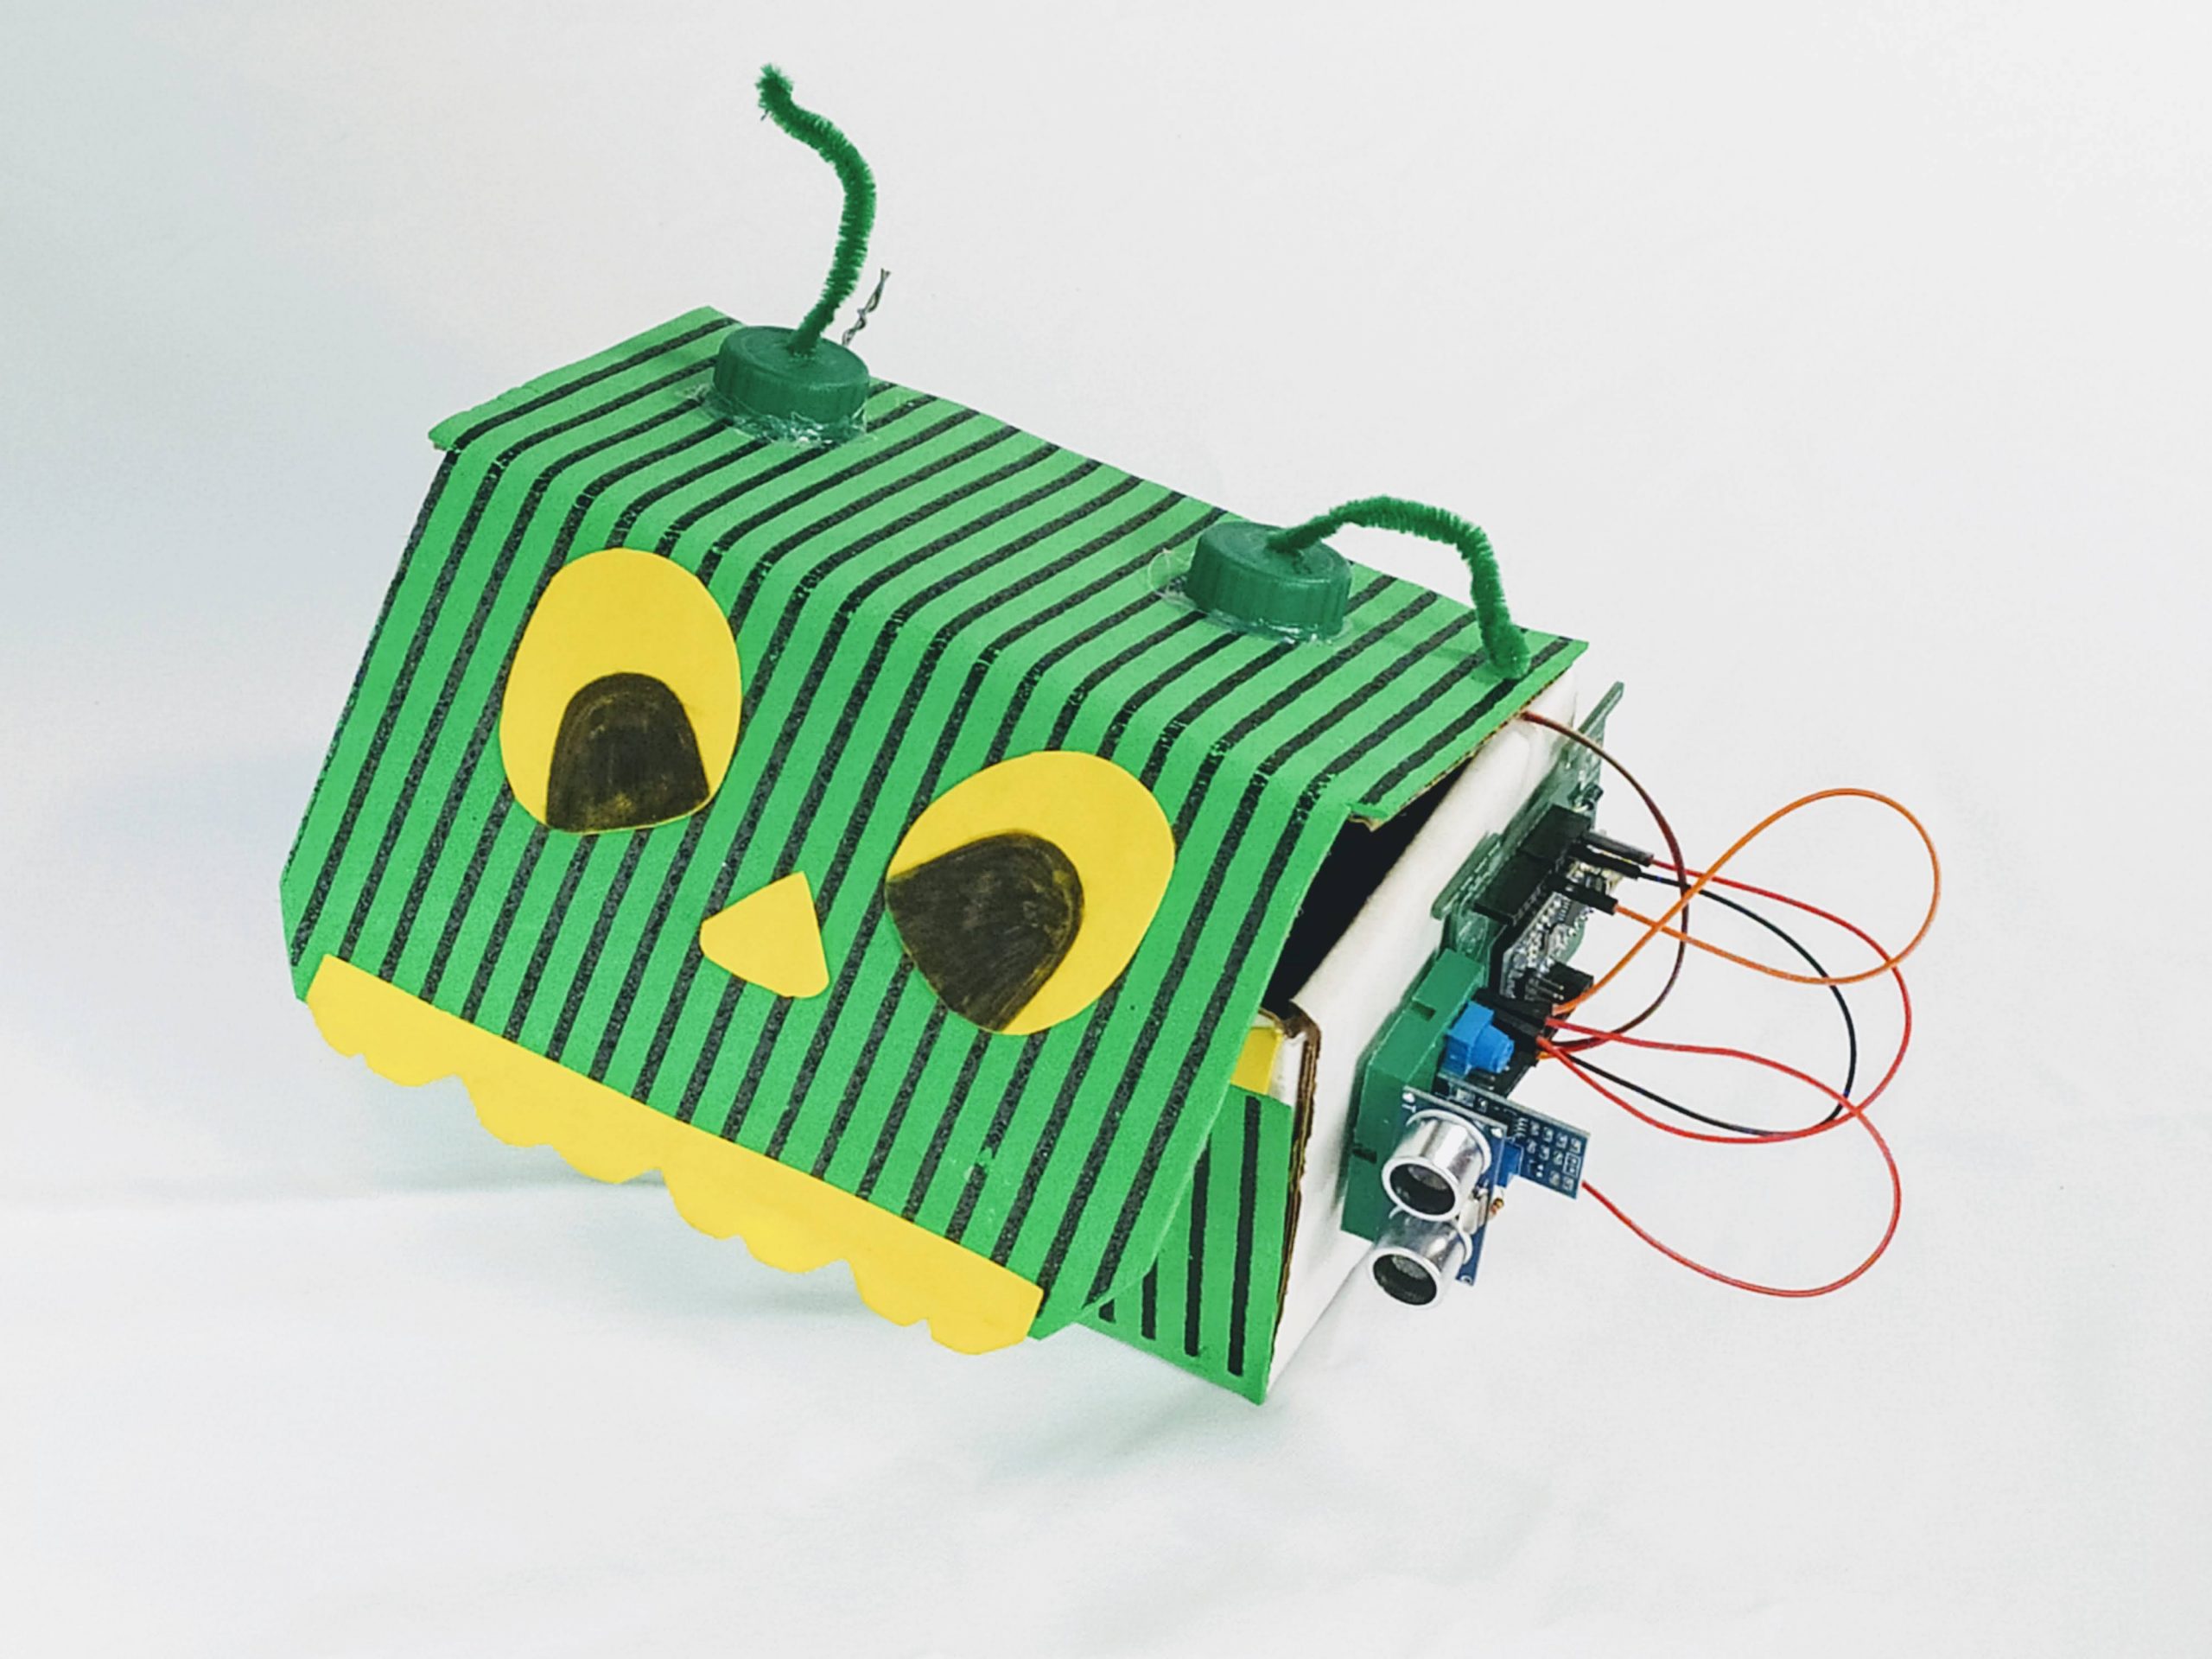 magic box barnabas robotics kit